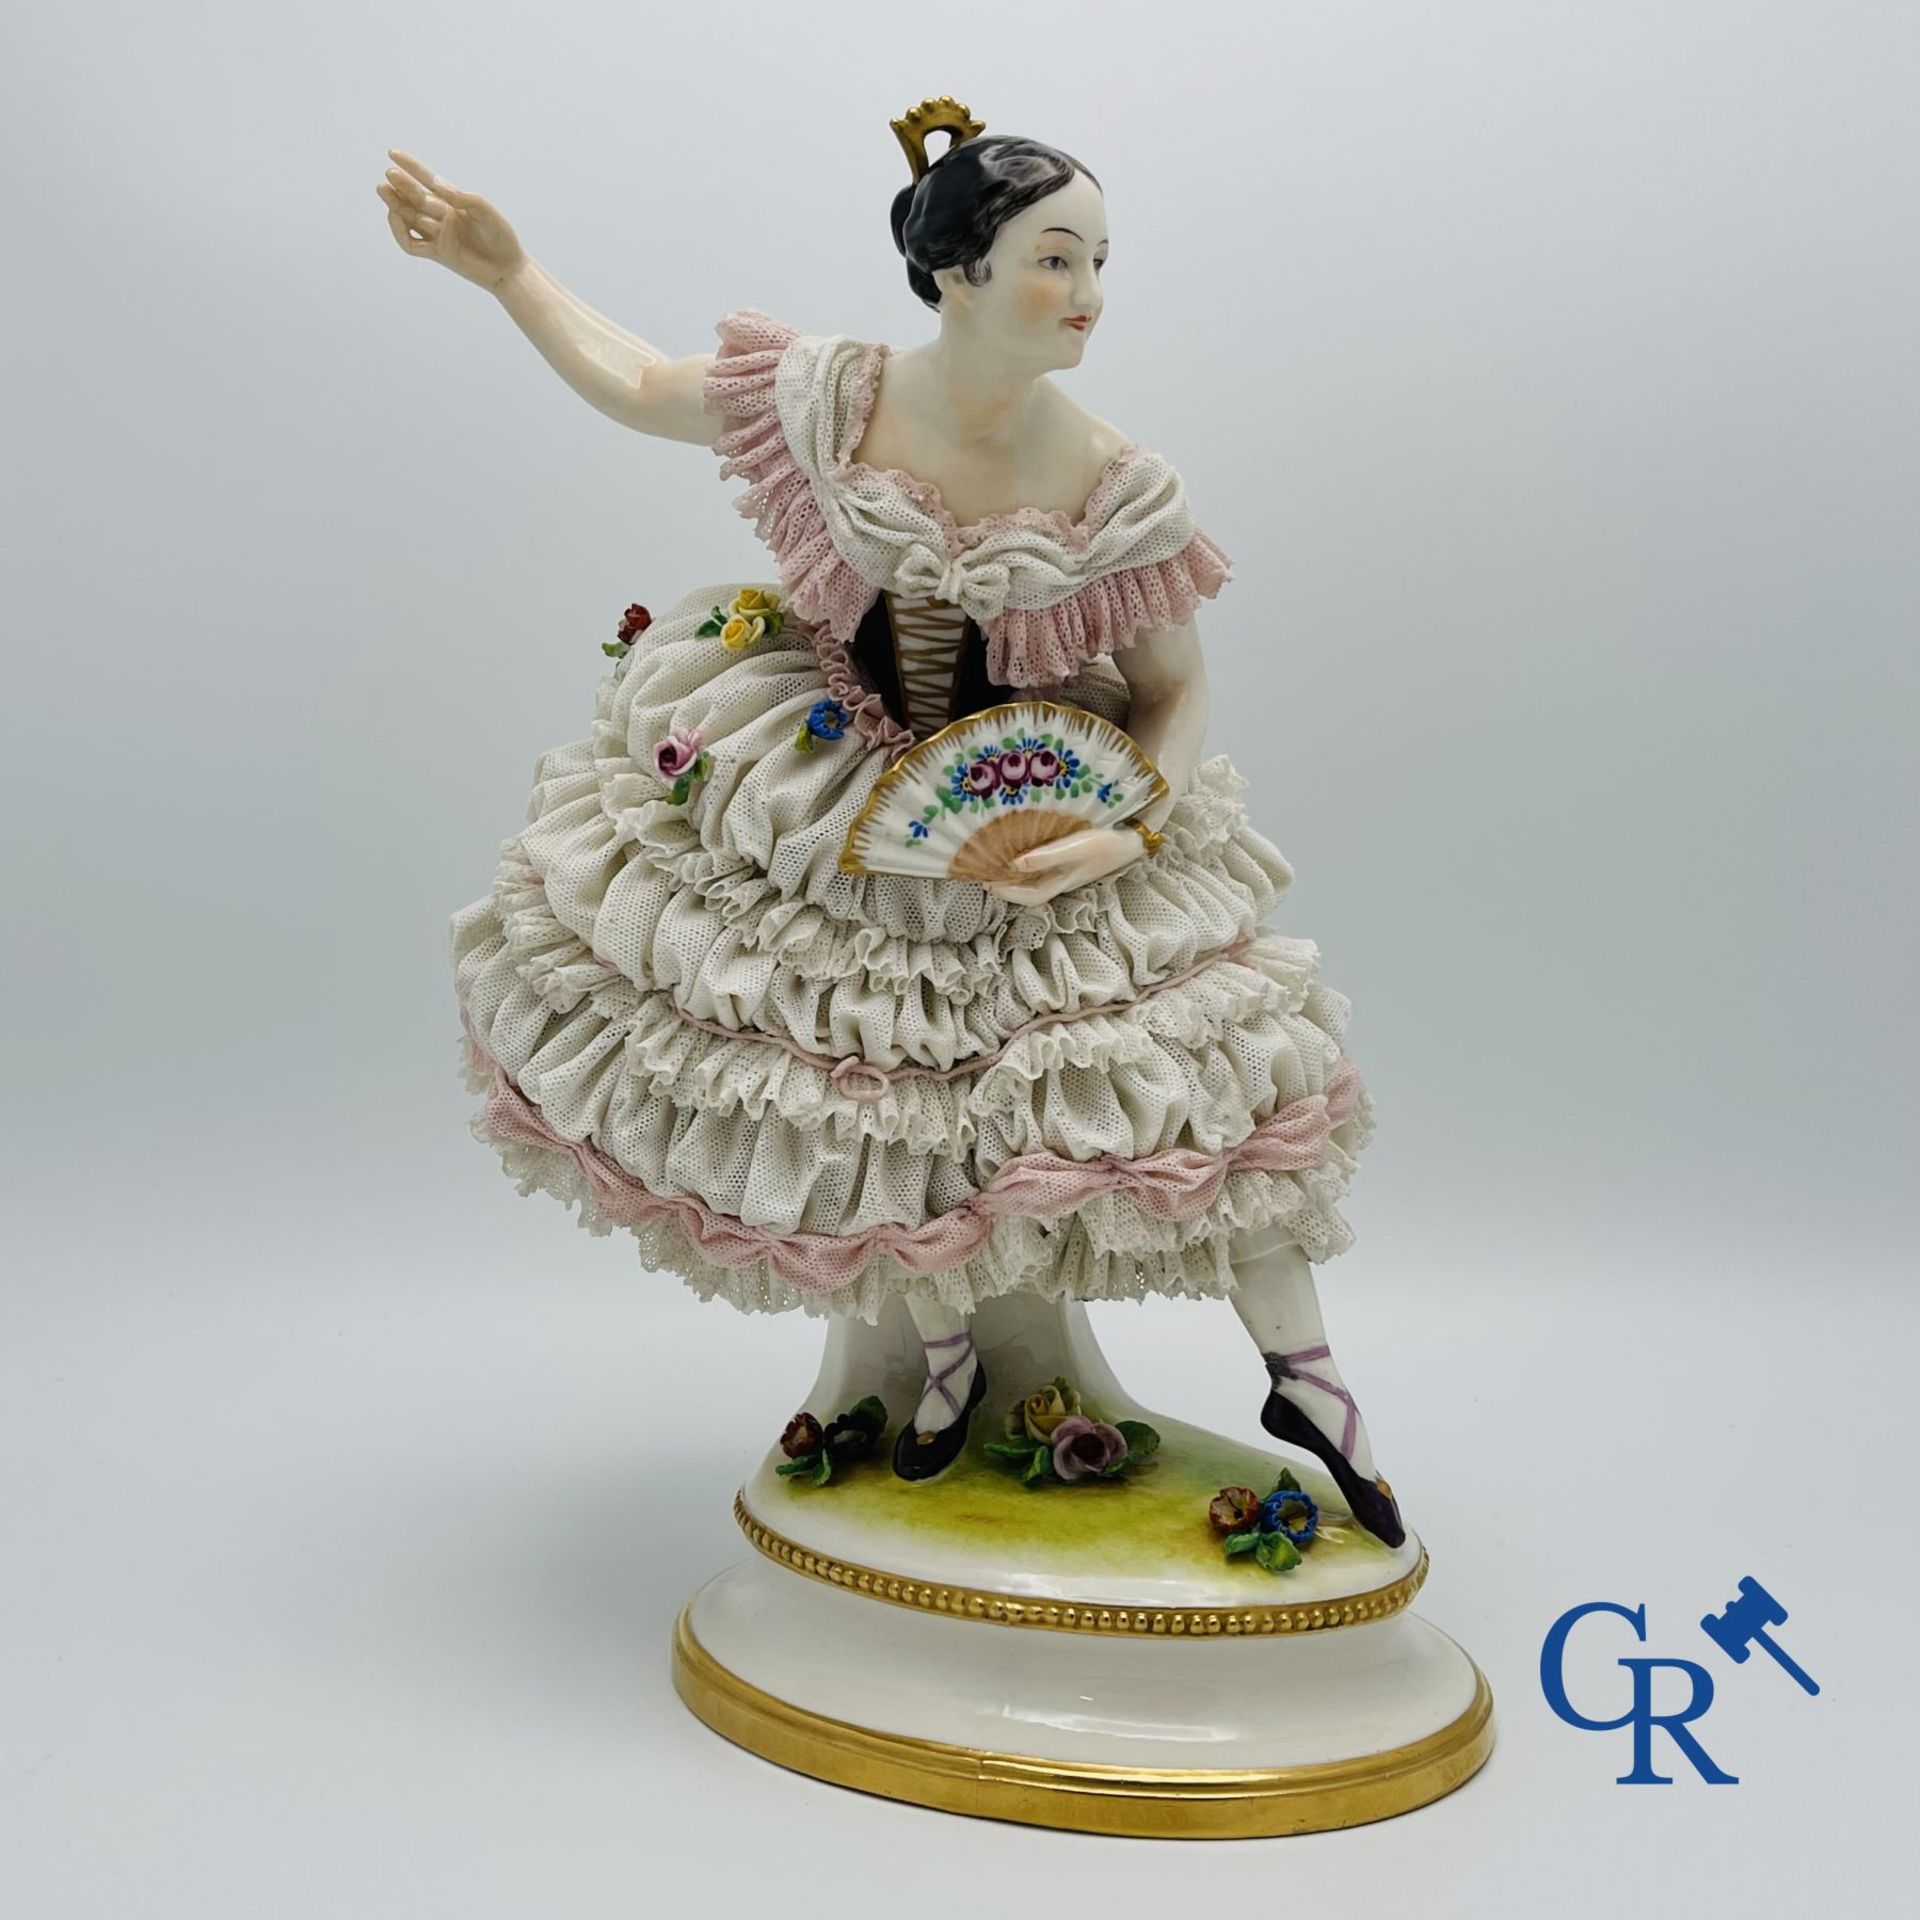 Volkstedt Rudolstadt: Large figure of a dancer in "lace porcelain".